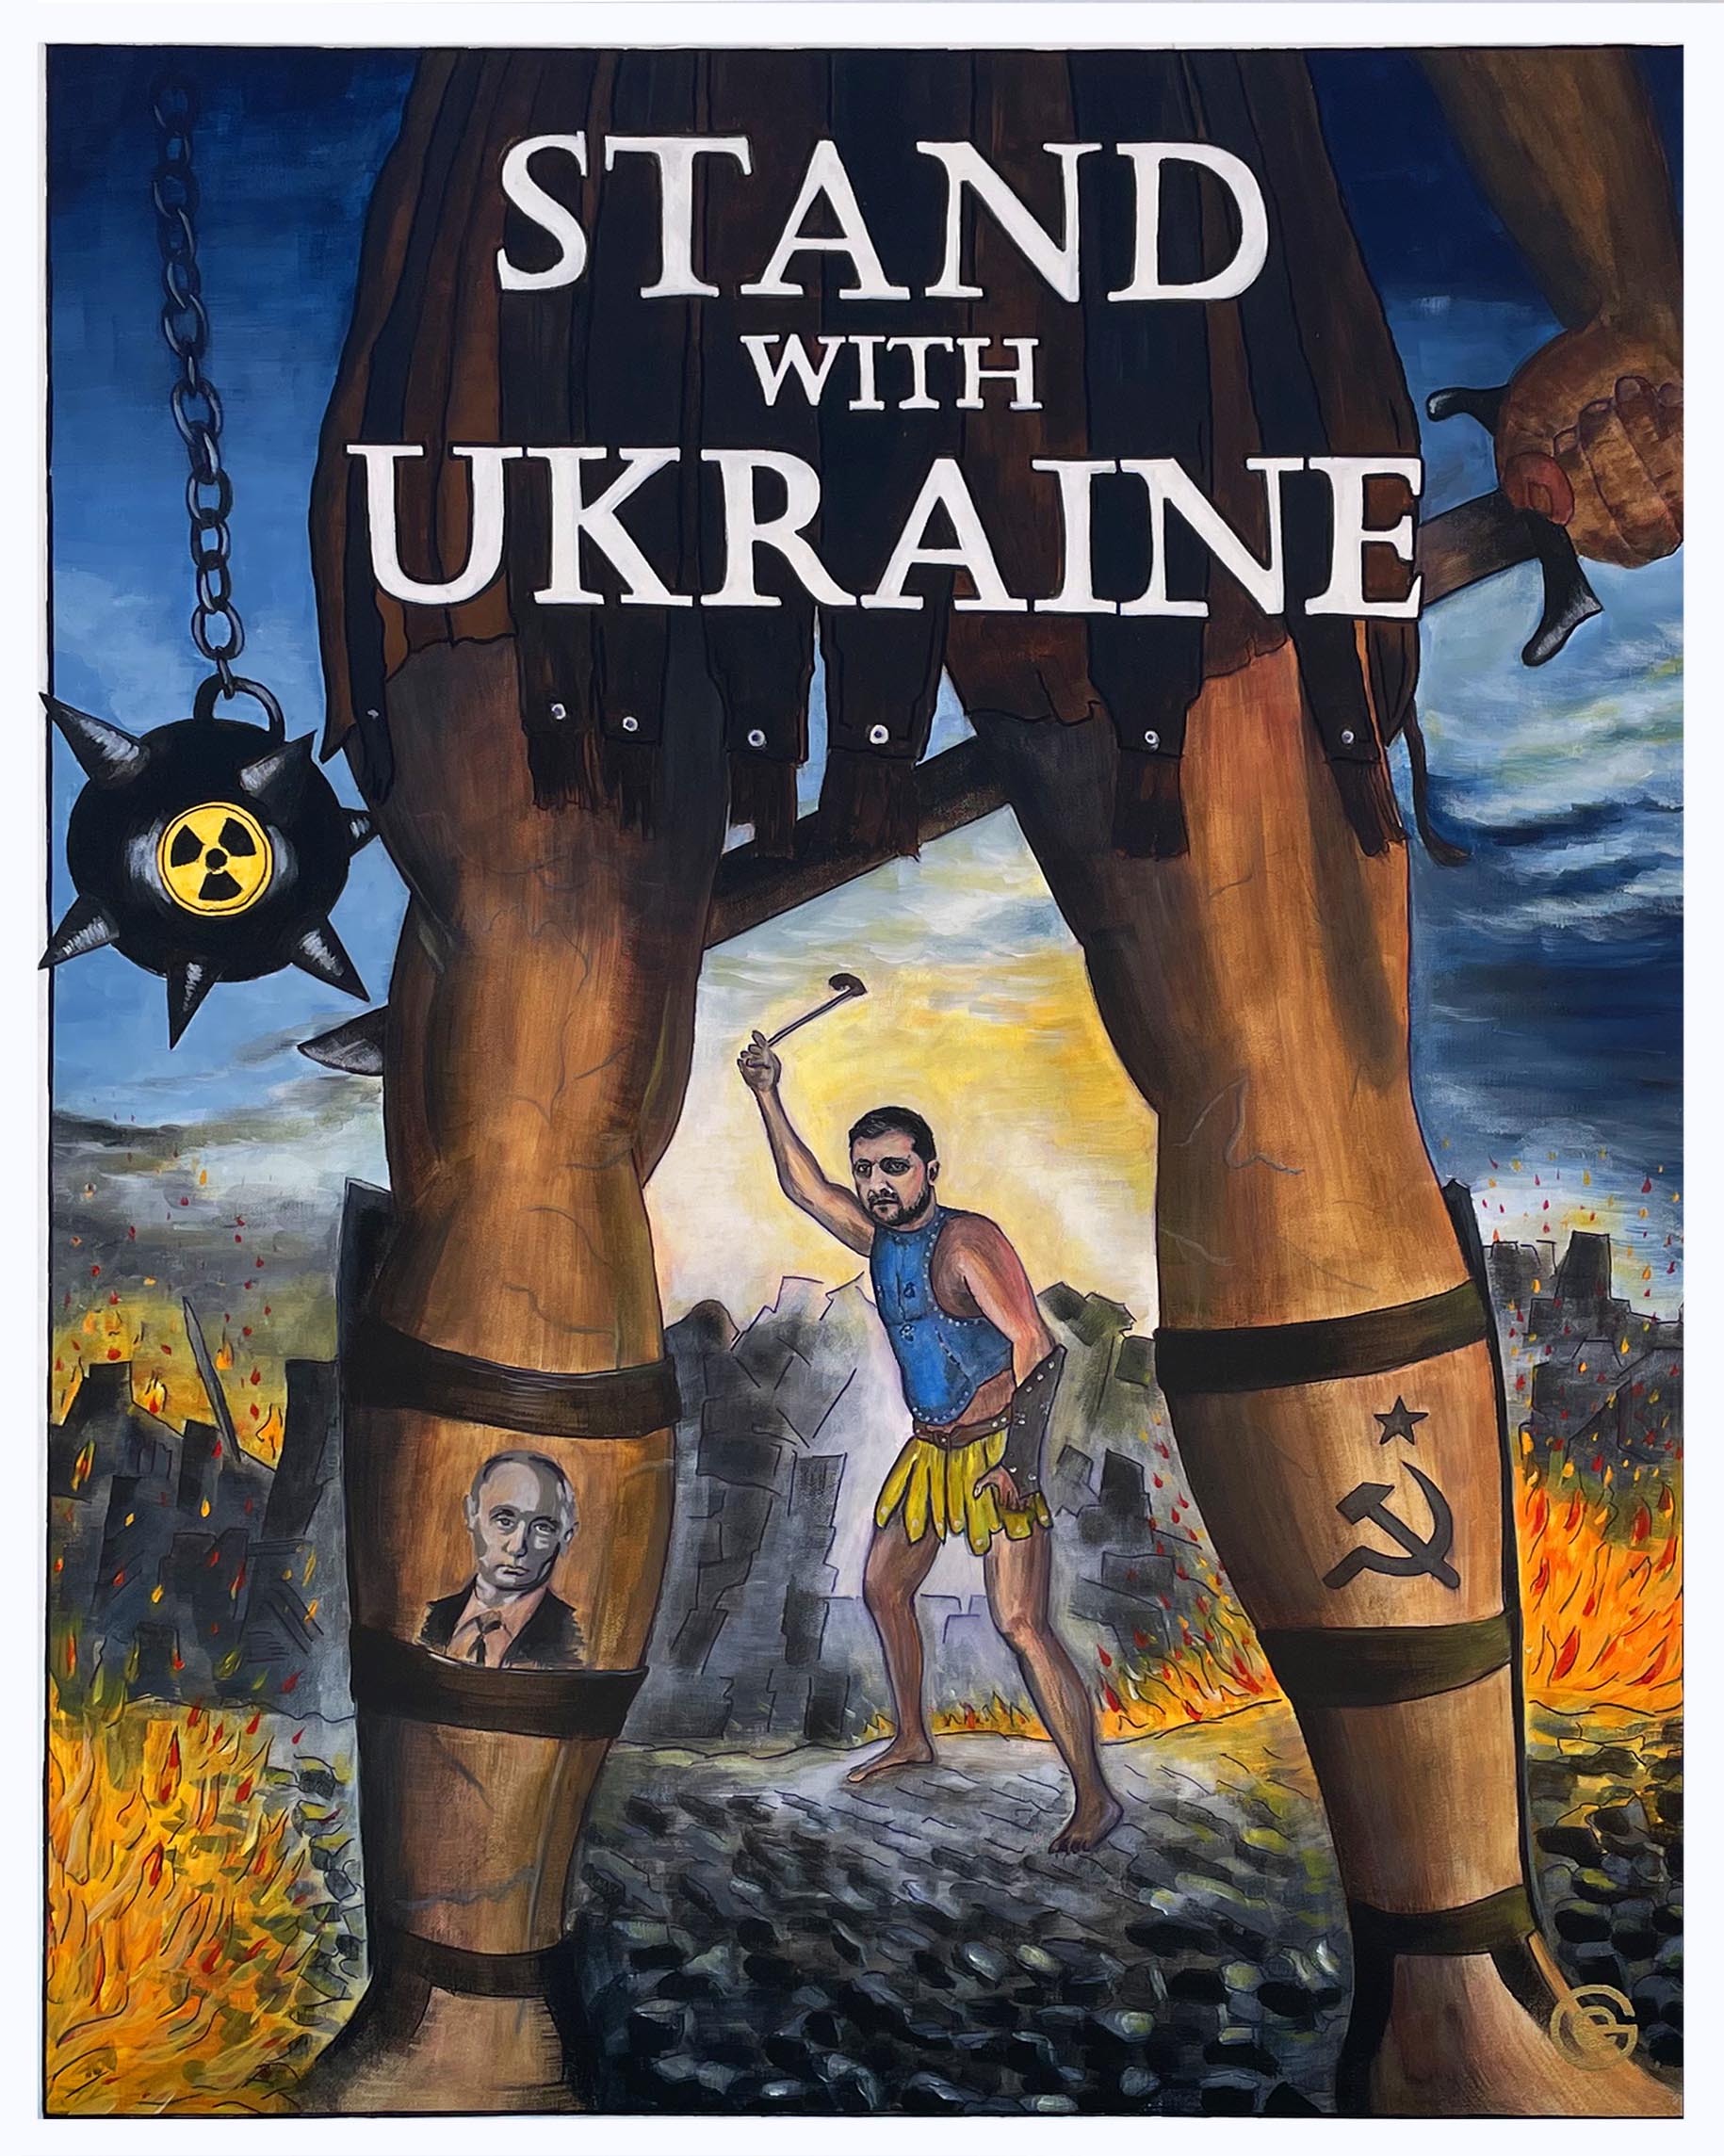 ¡Defienda a Ucraina!